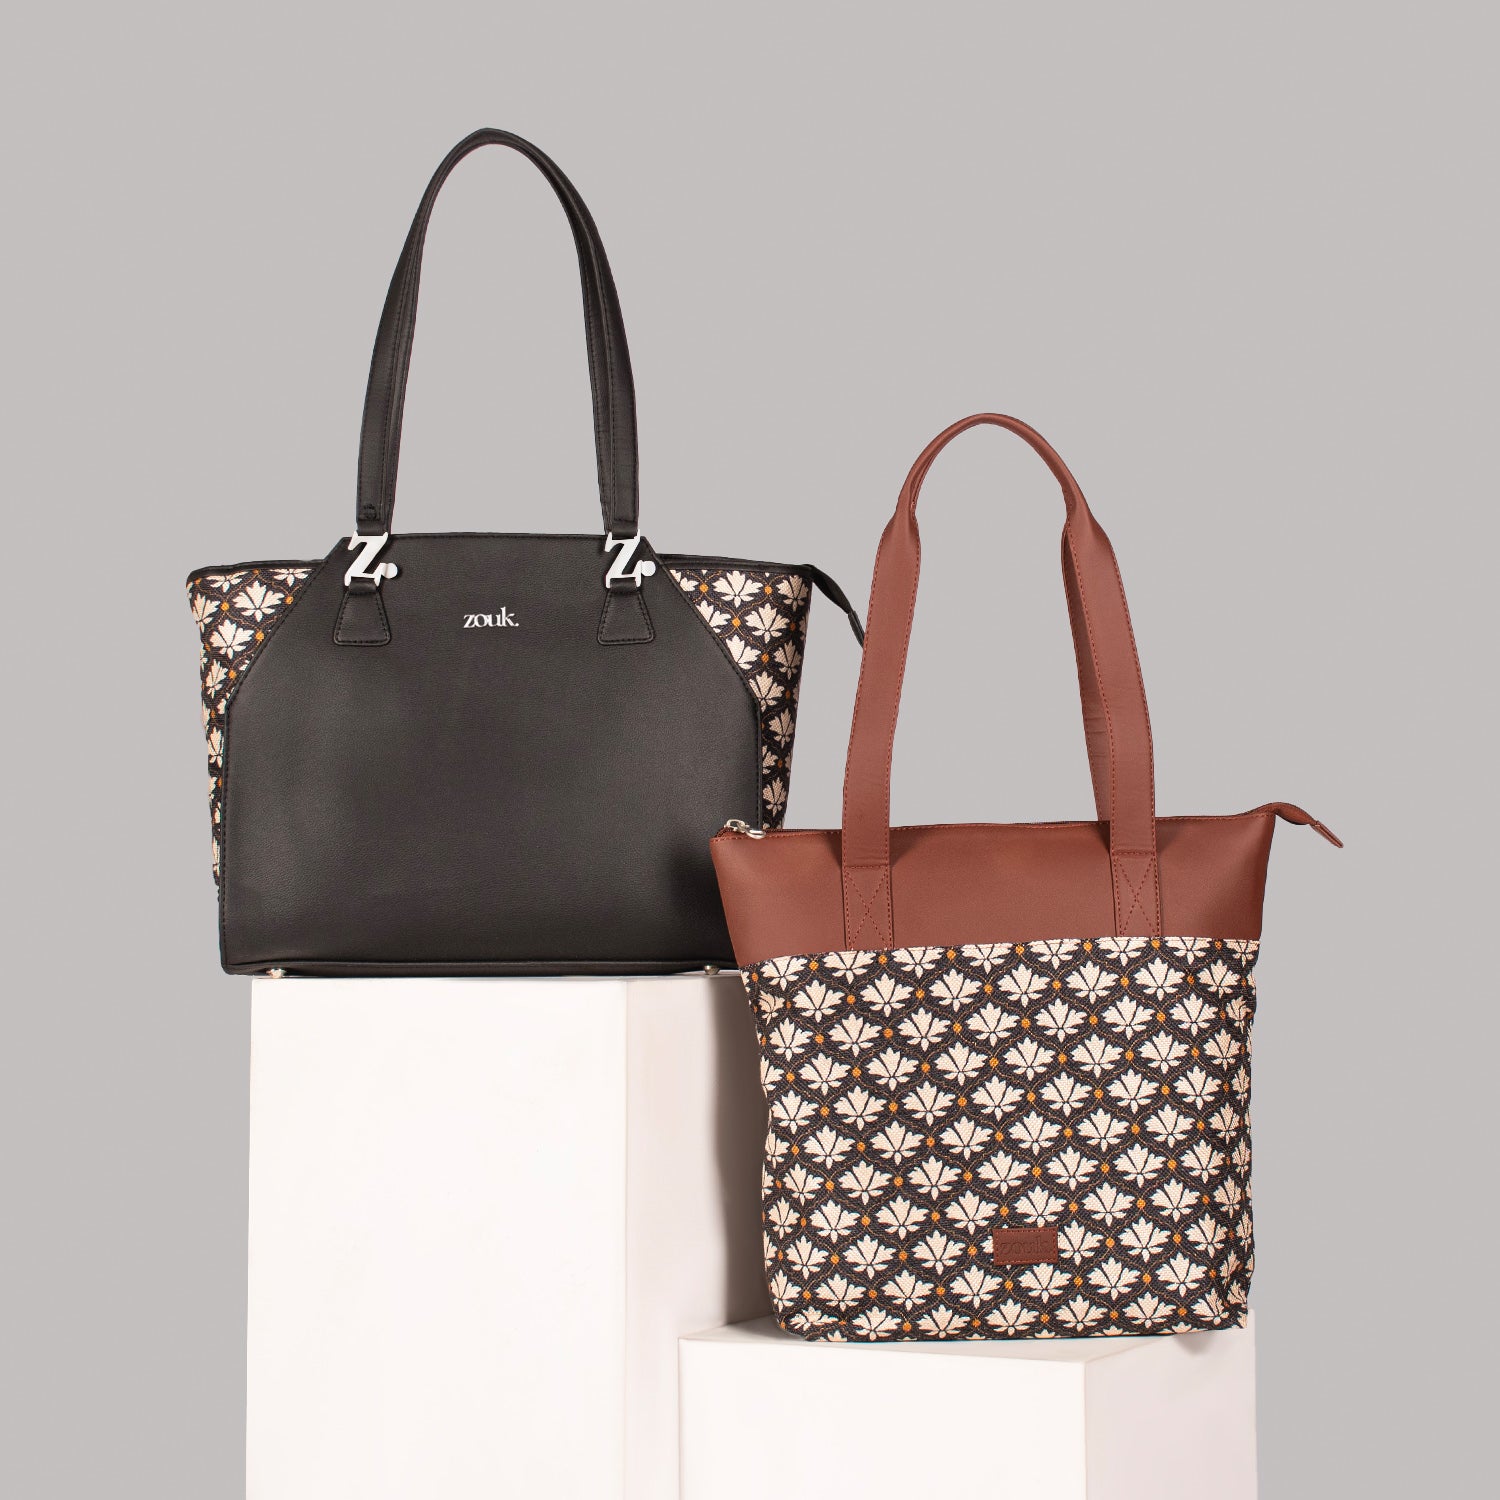 Bidri Kaiser - Women's Work Bag & Everyday Tote Combo